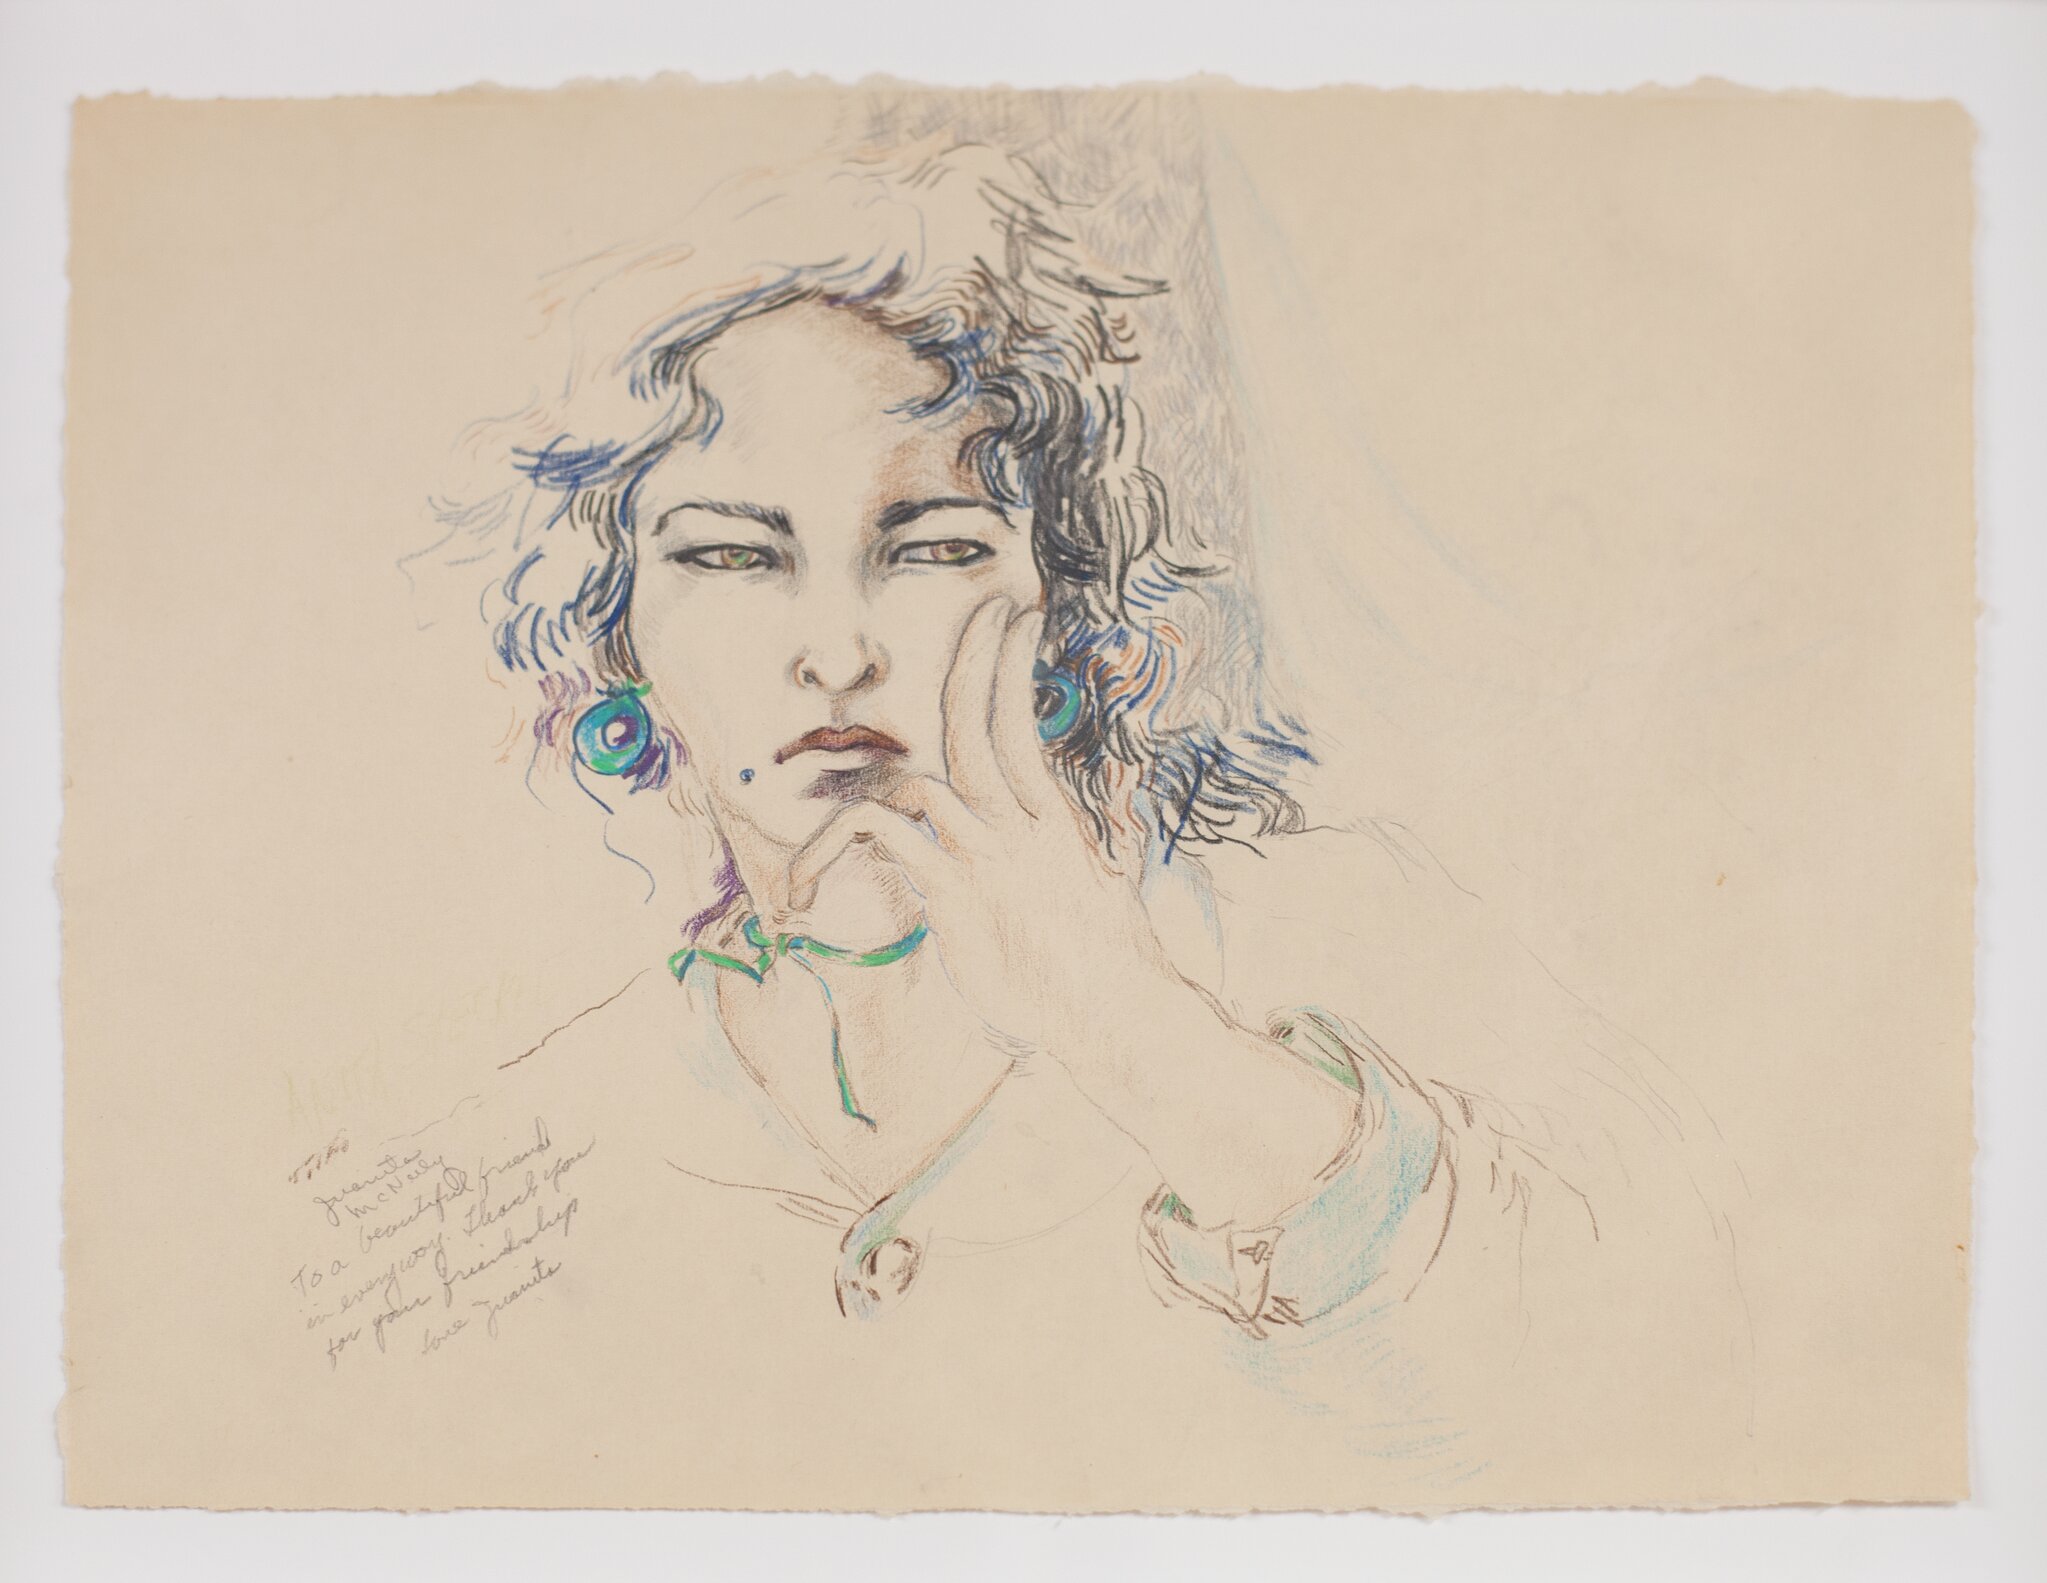 Juanita McNeely, Untitled (drawing of Anita Steckel), c. 1970s